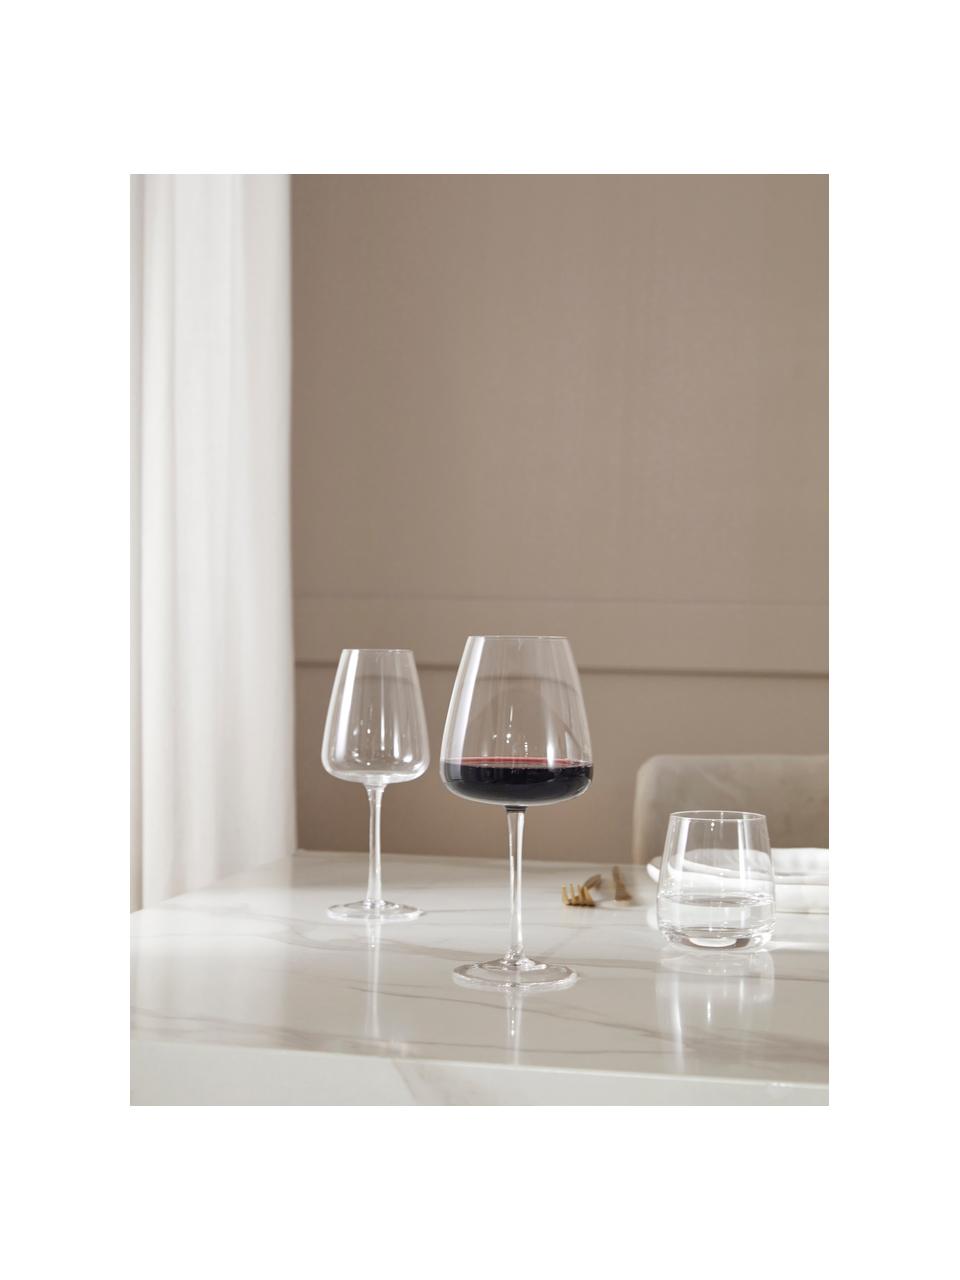 Copas de vino tinto artesanales Ellery, 4 uds., Vidrio, Transparente, Ø 11 x Al 23 cm, 610 ml